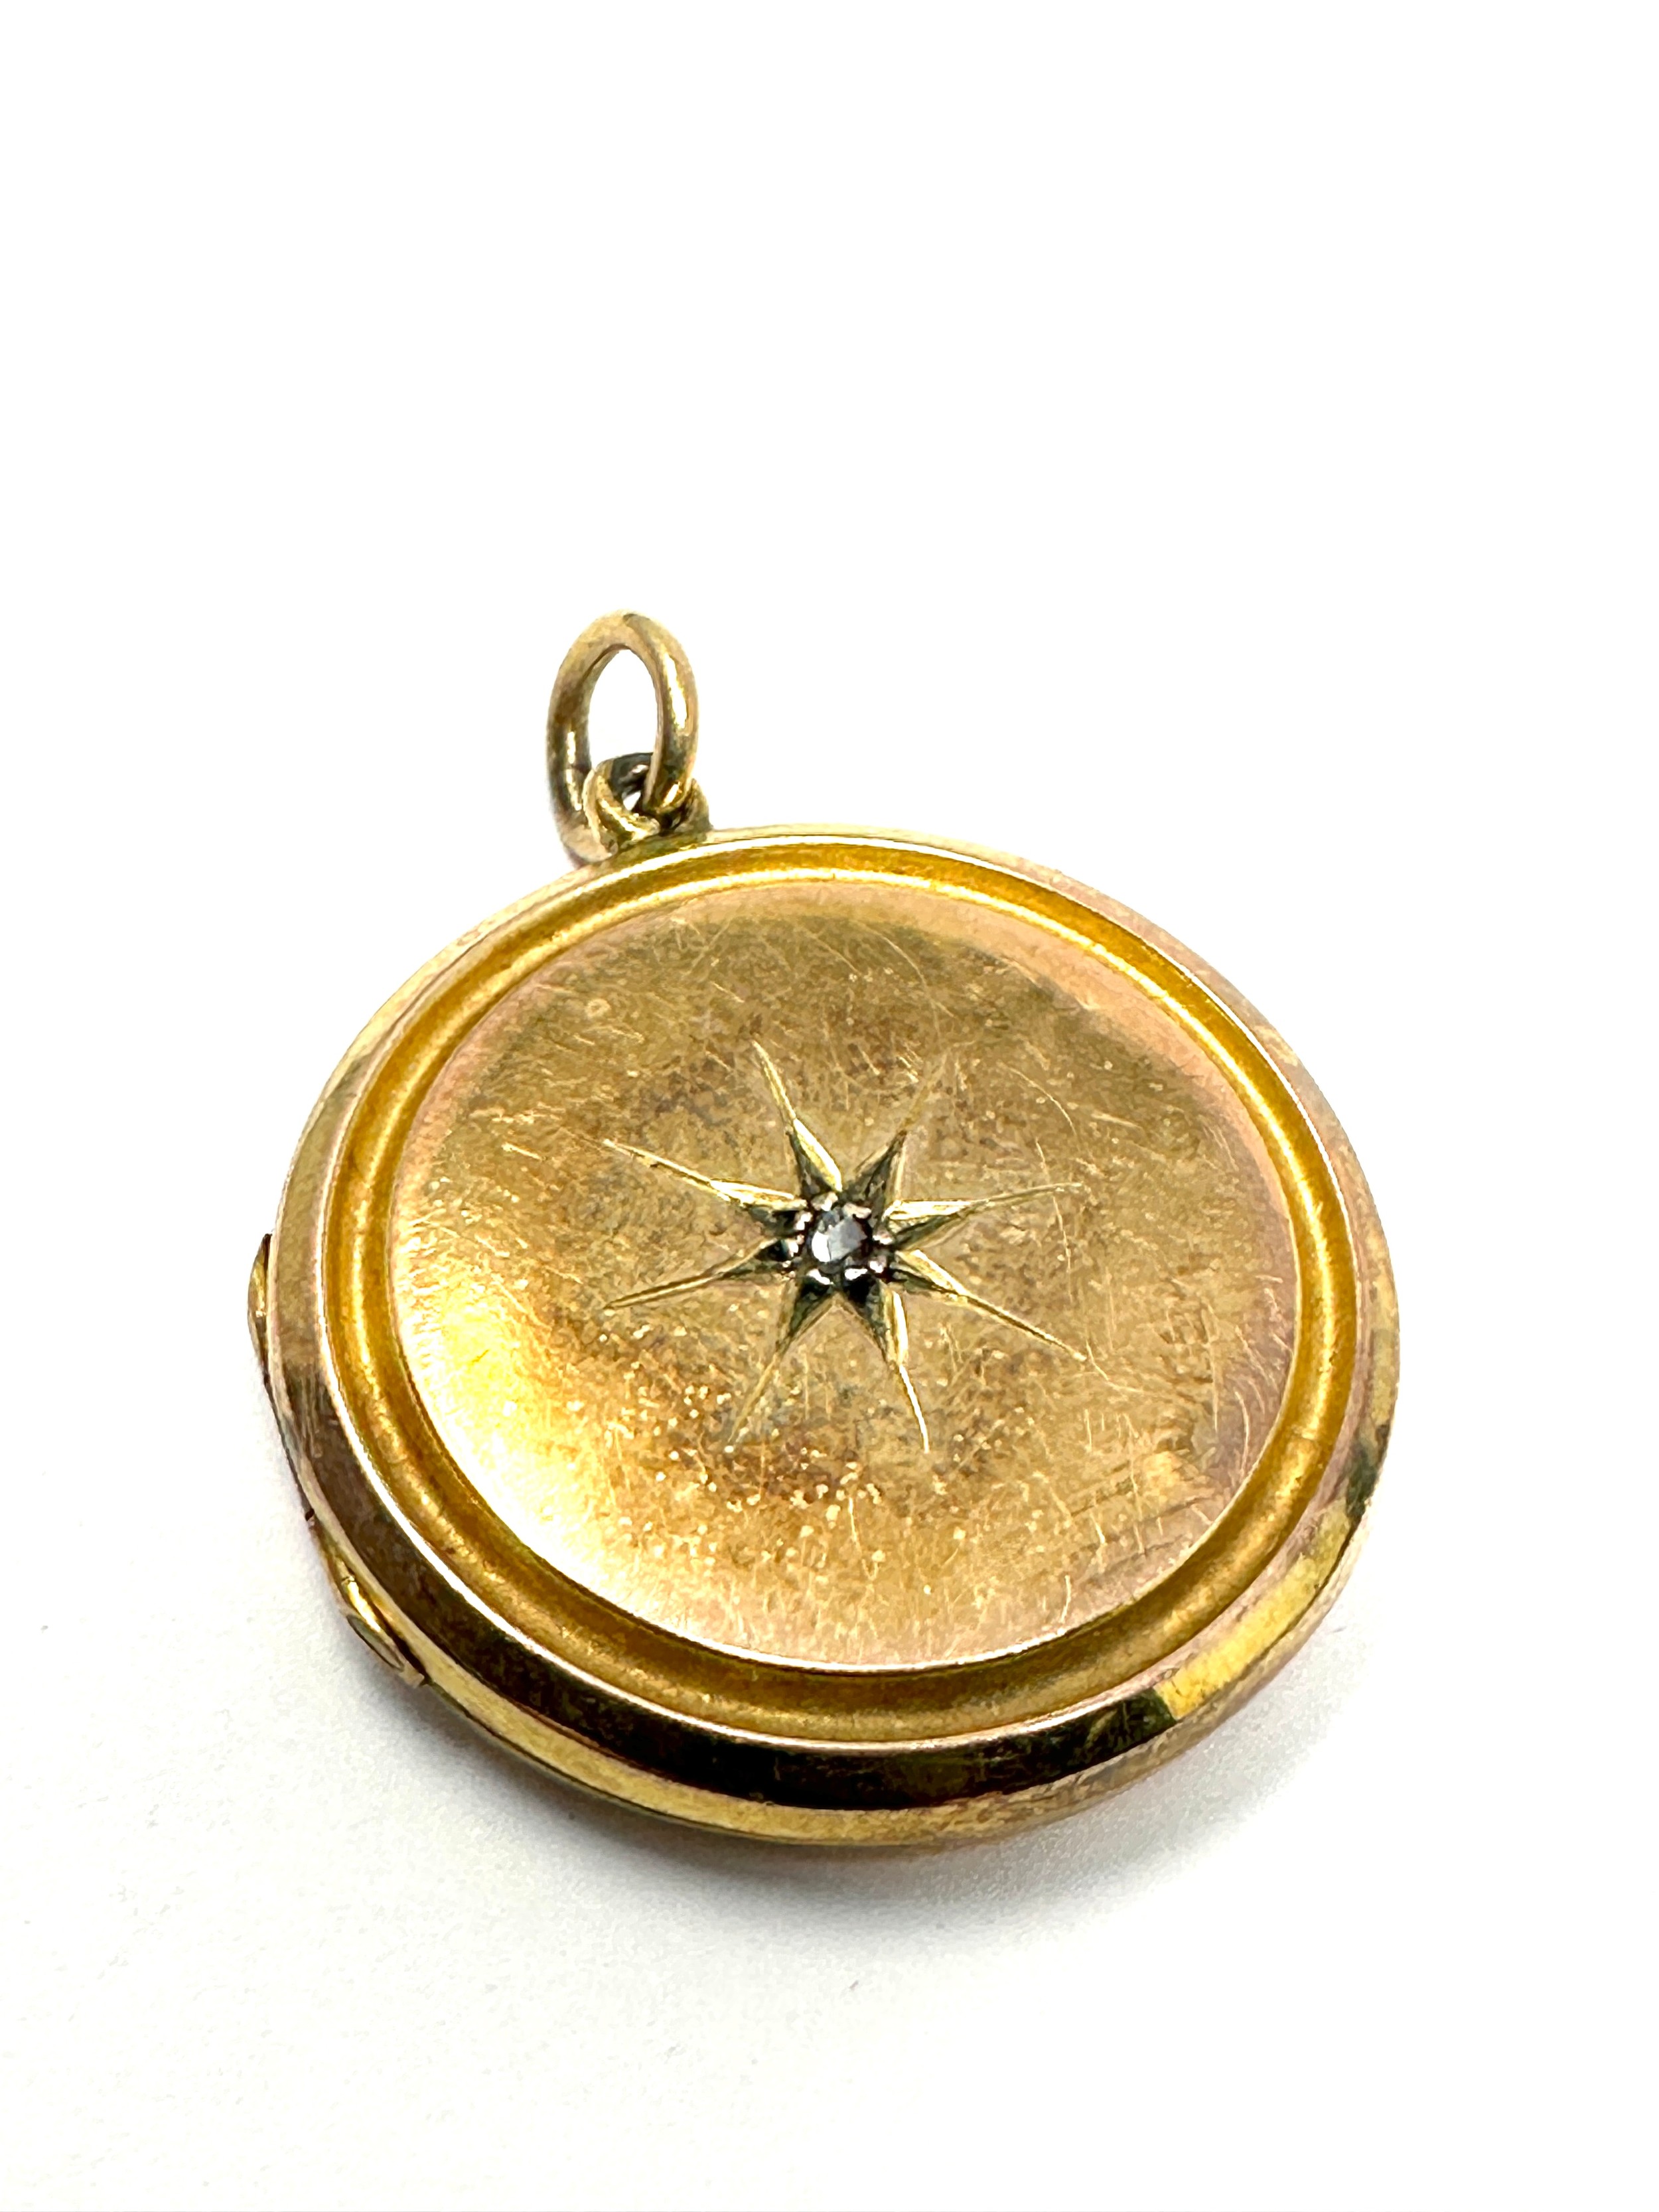 9ct gold back & front patterned locket (5.4g)